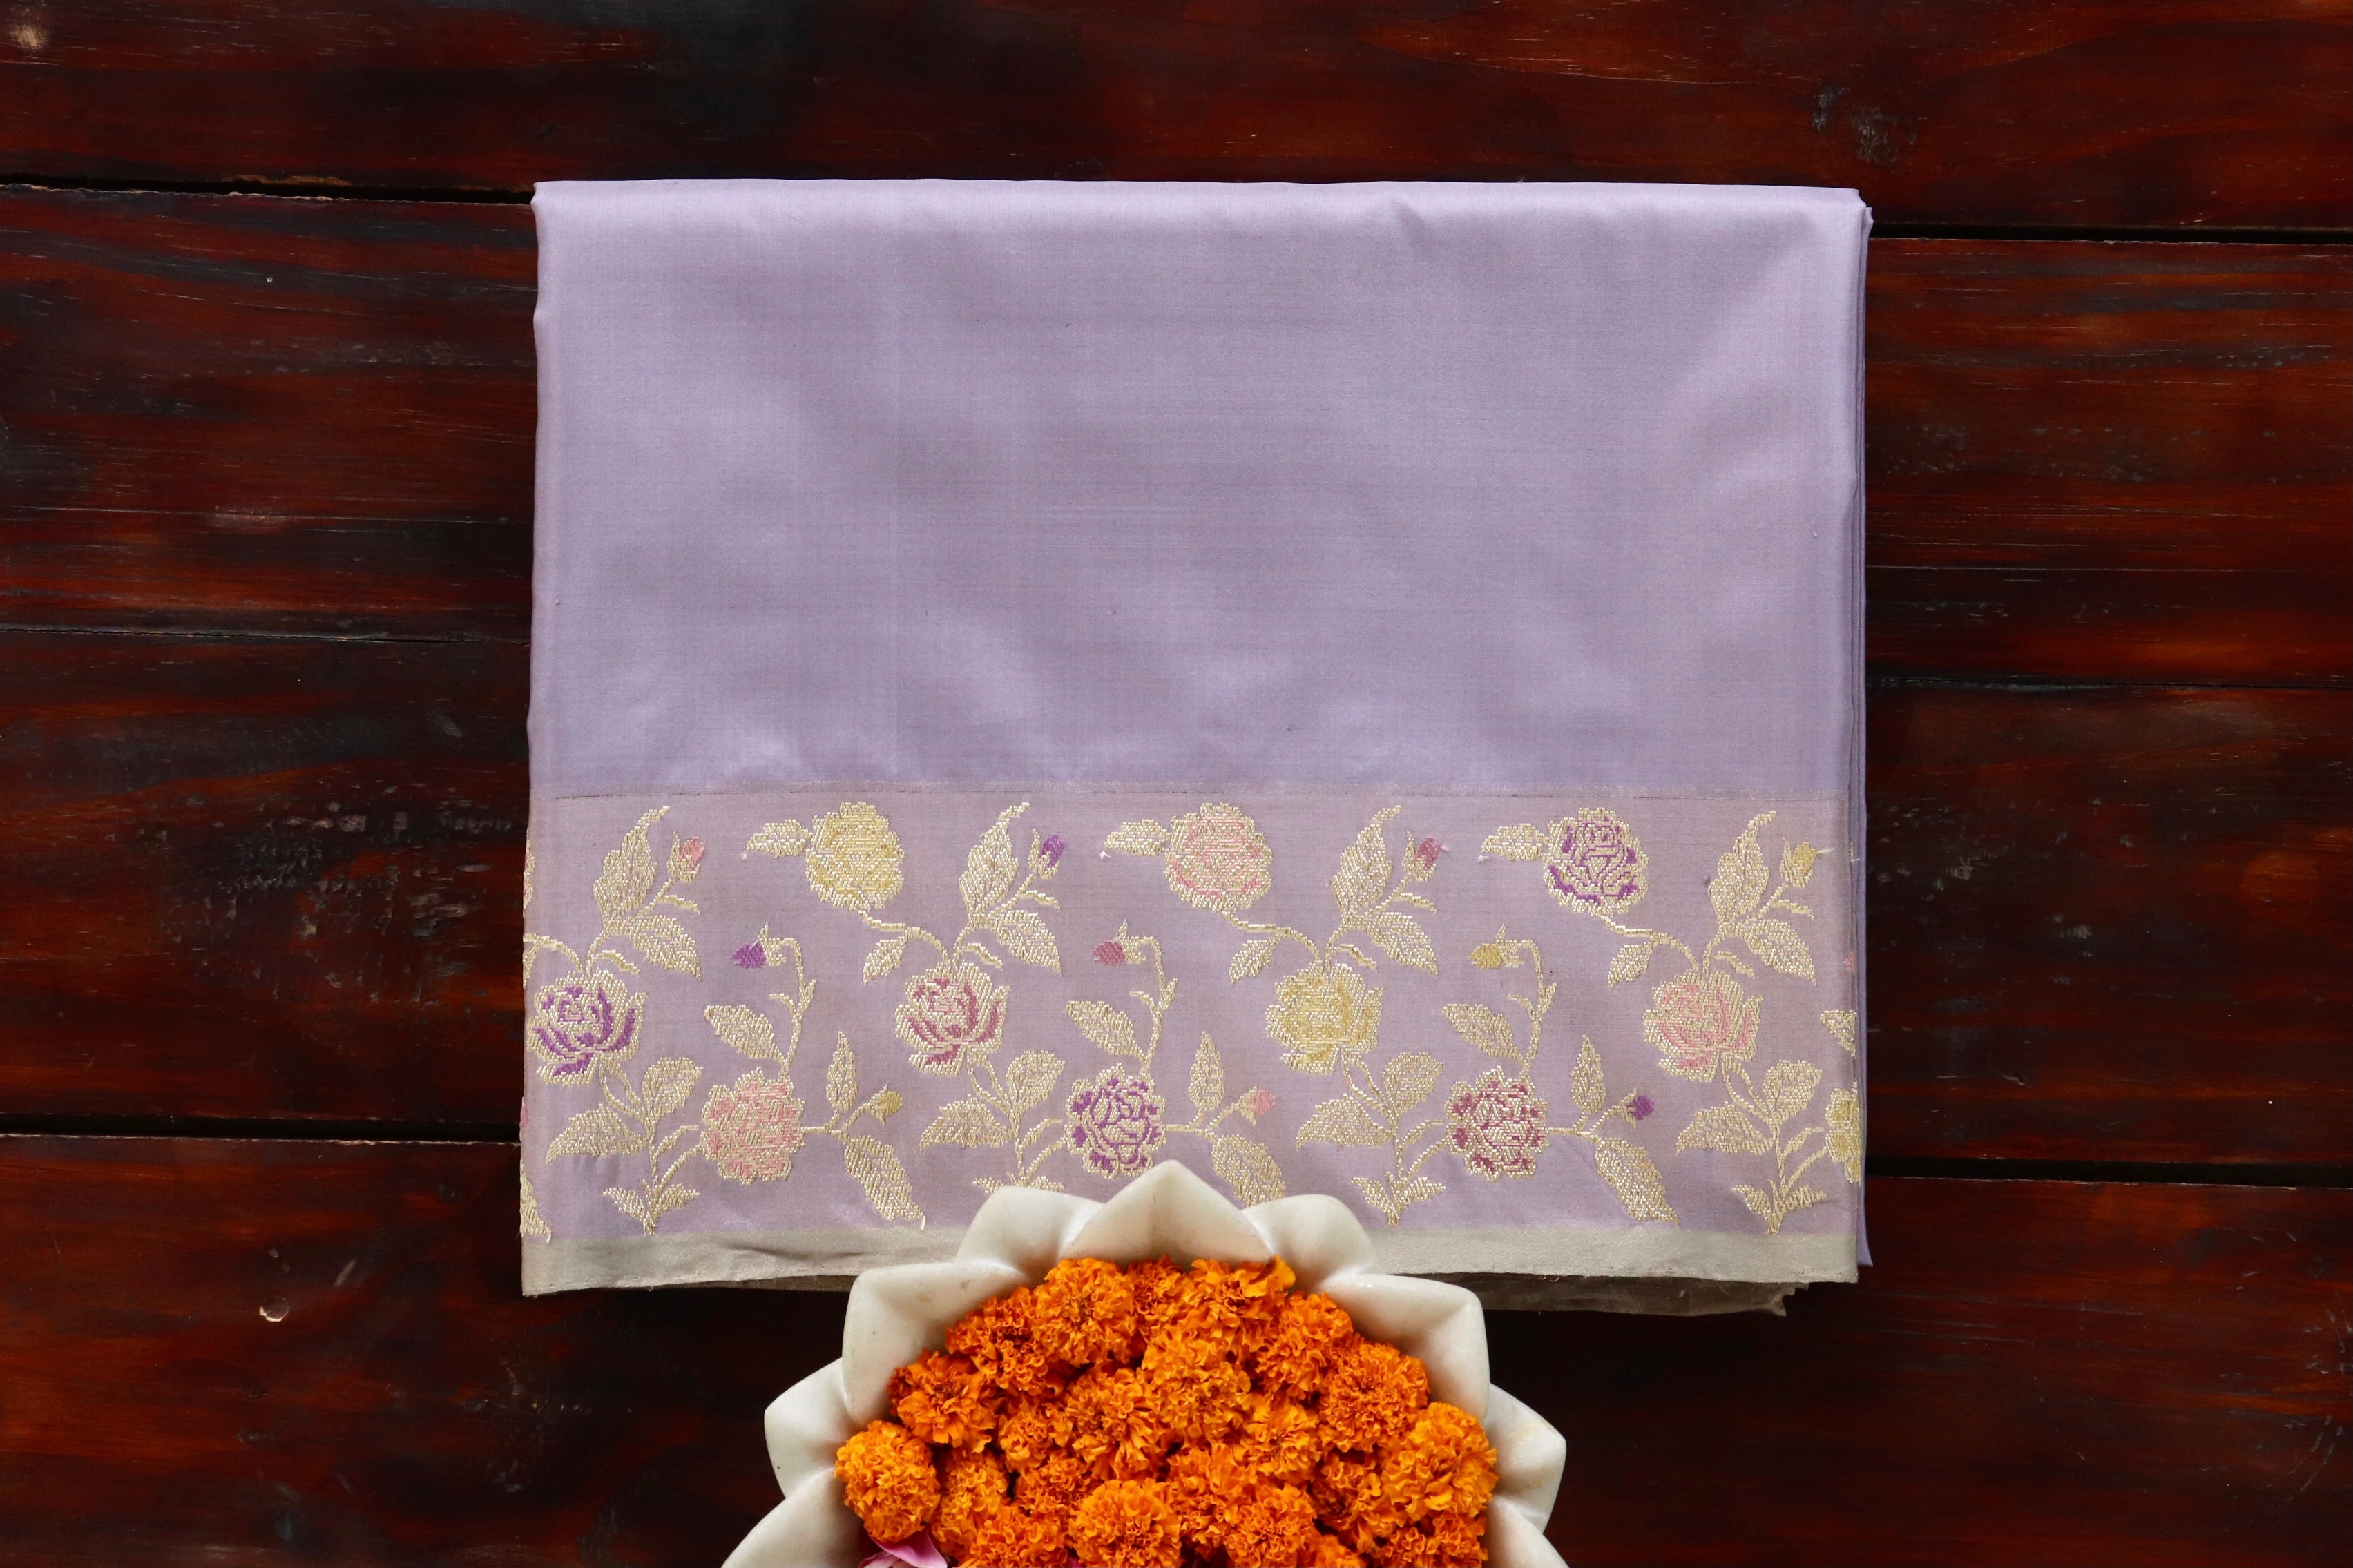 Lilac Kadhua Pure Katan Silk Handloom Banarasi Saree